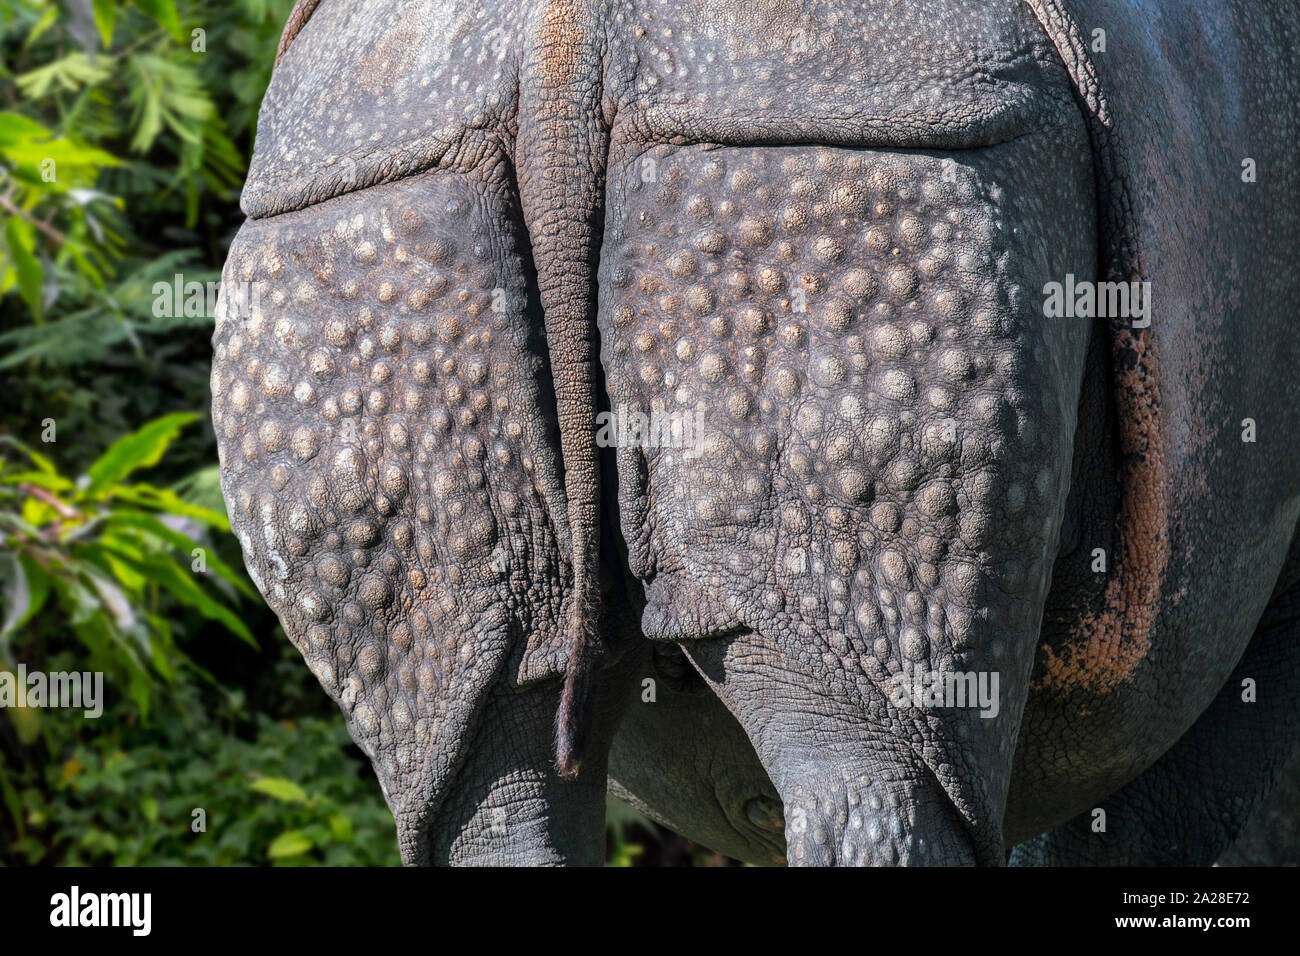 Rhinocéros indien / rhinocéros à une corne / rhinocéros unicorne de l'Inde (Rhinoceros unicornis) close-up de verrue-comme des bosses sur la peau arrière Banque D'Images